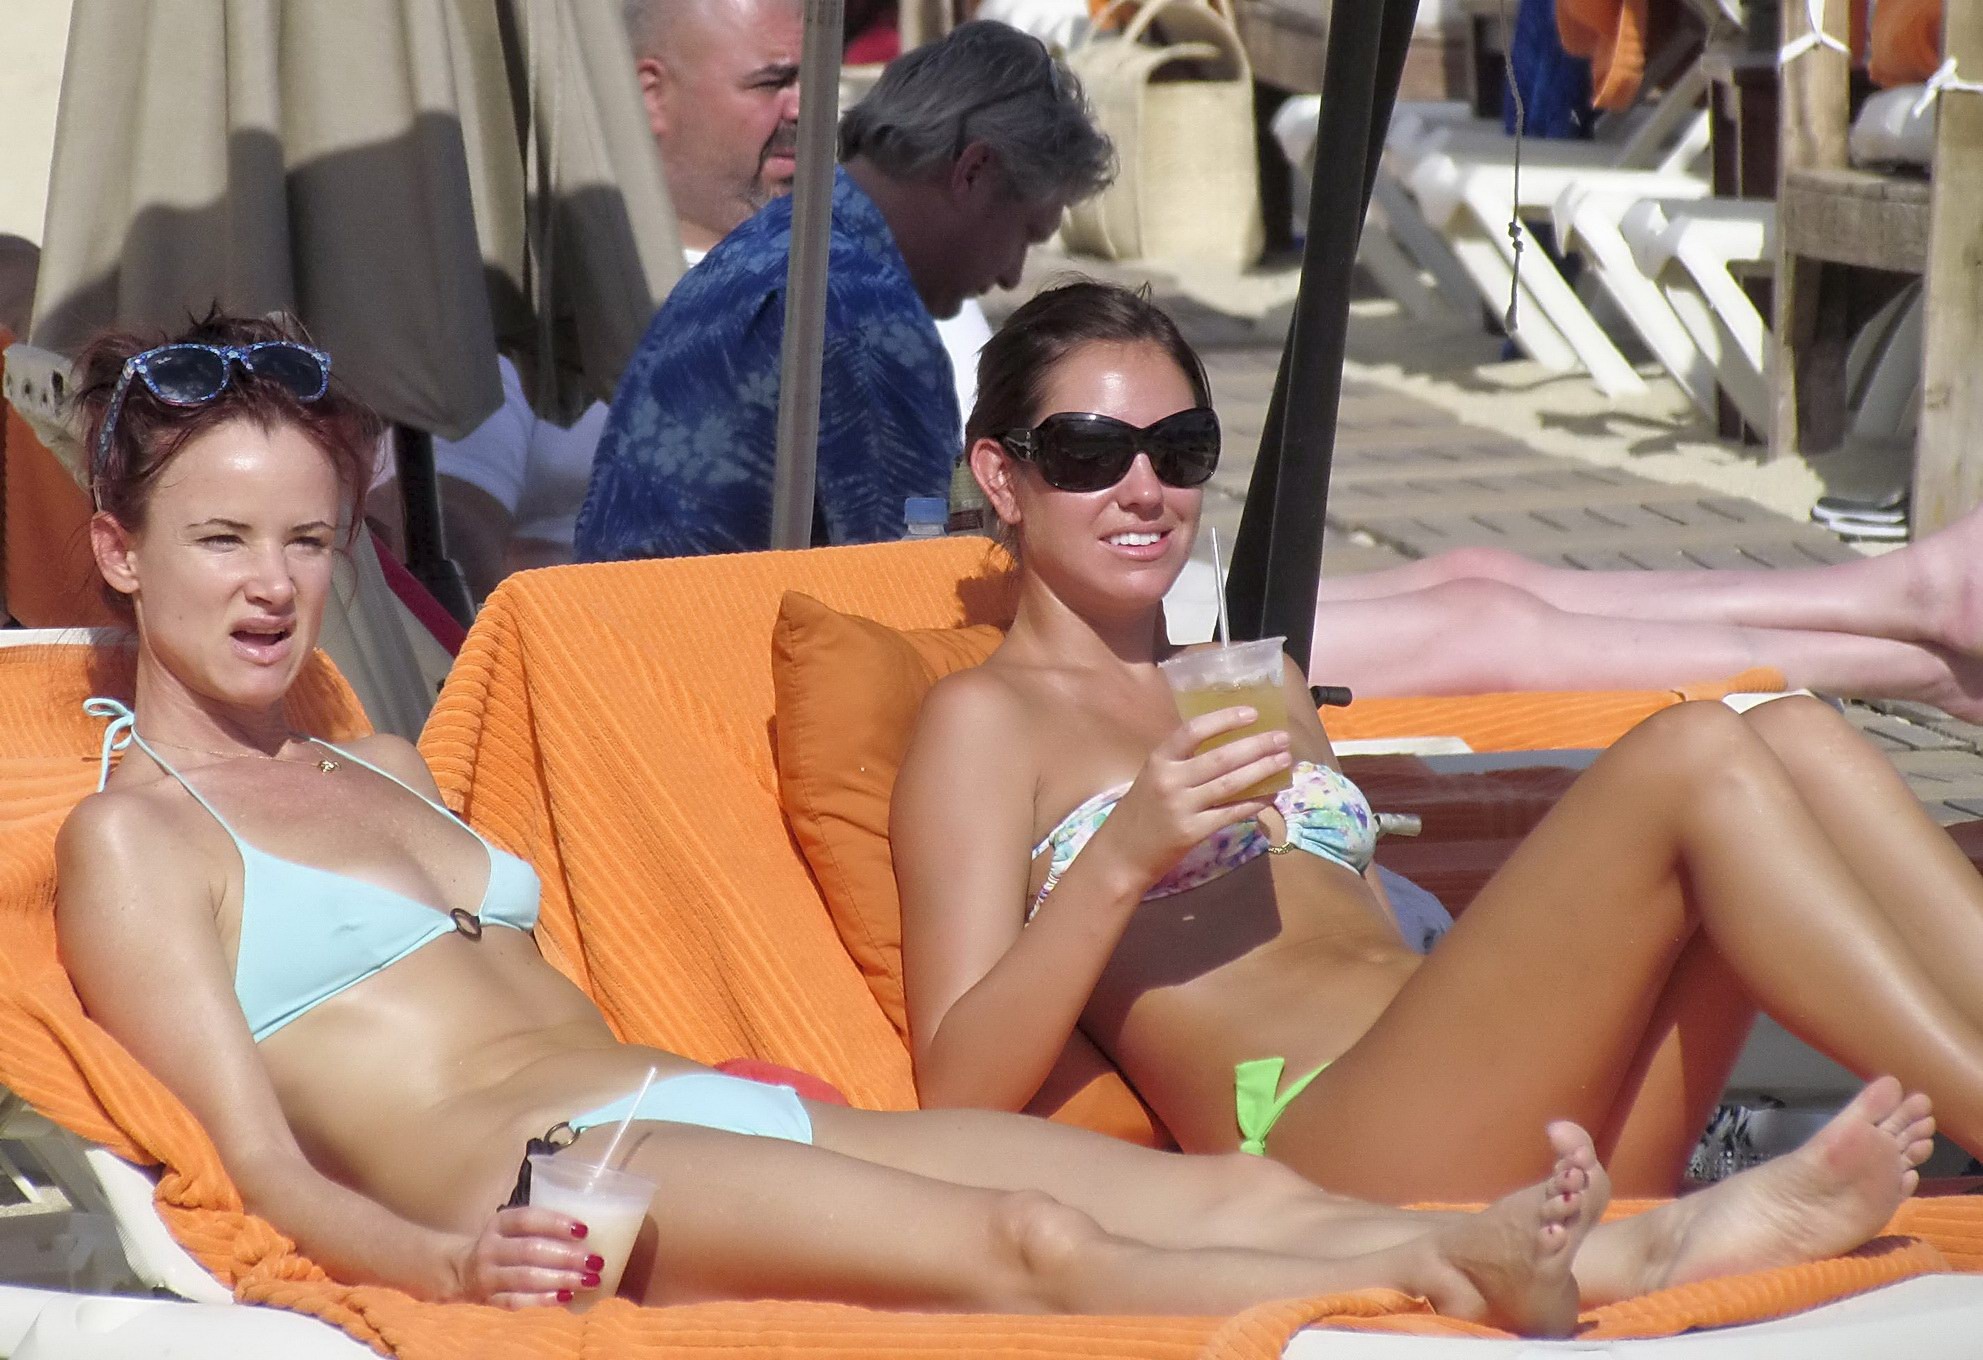 Juliette lewis luciendo un escaso bikini azul claro en la playa de méxico
 #75239324